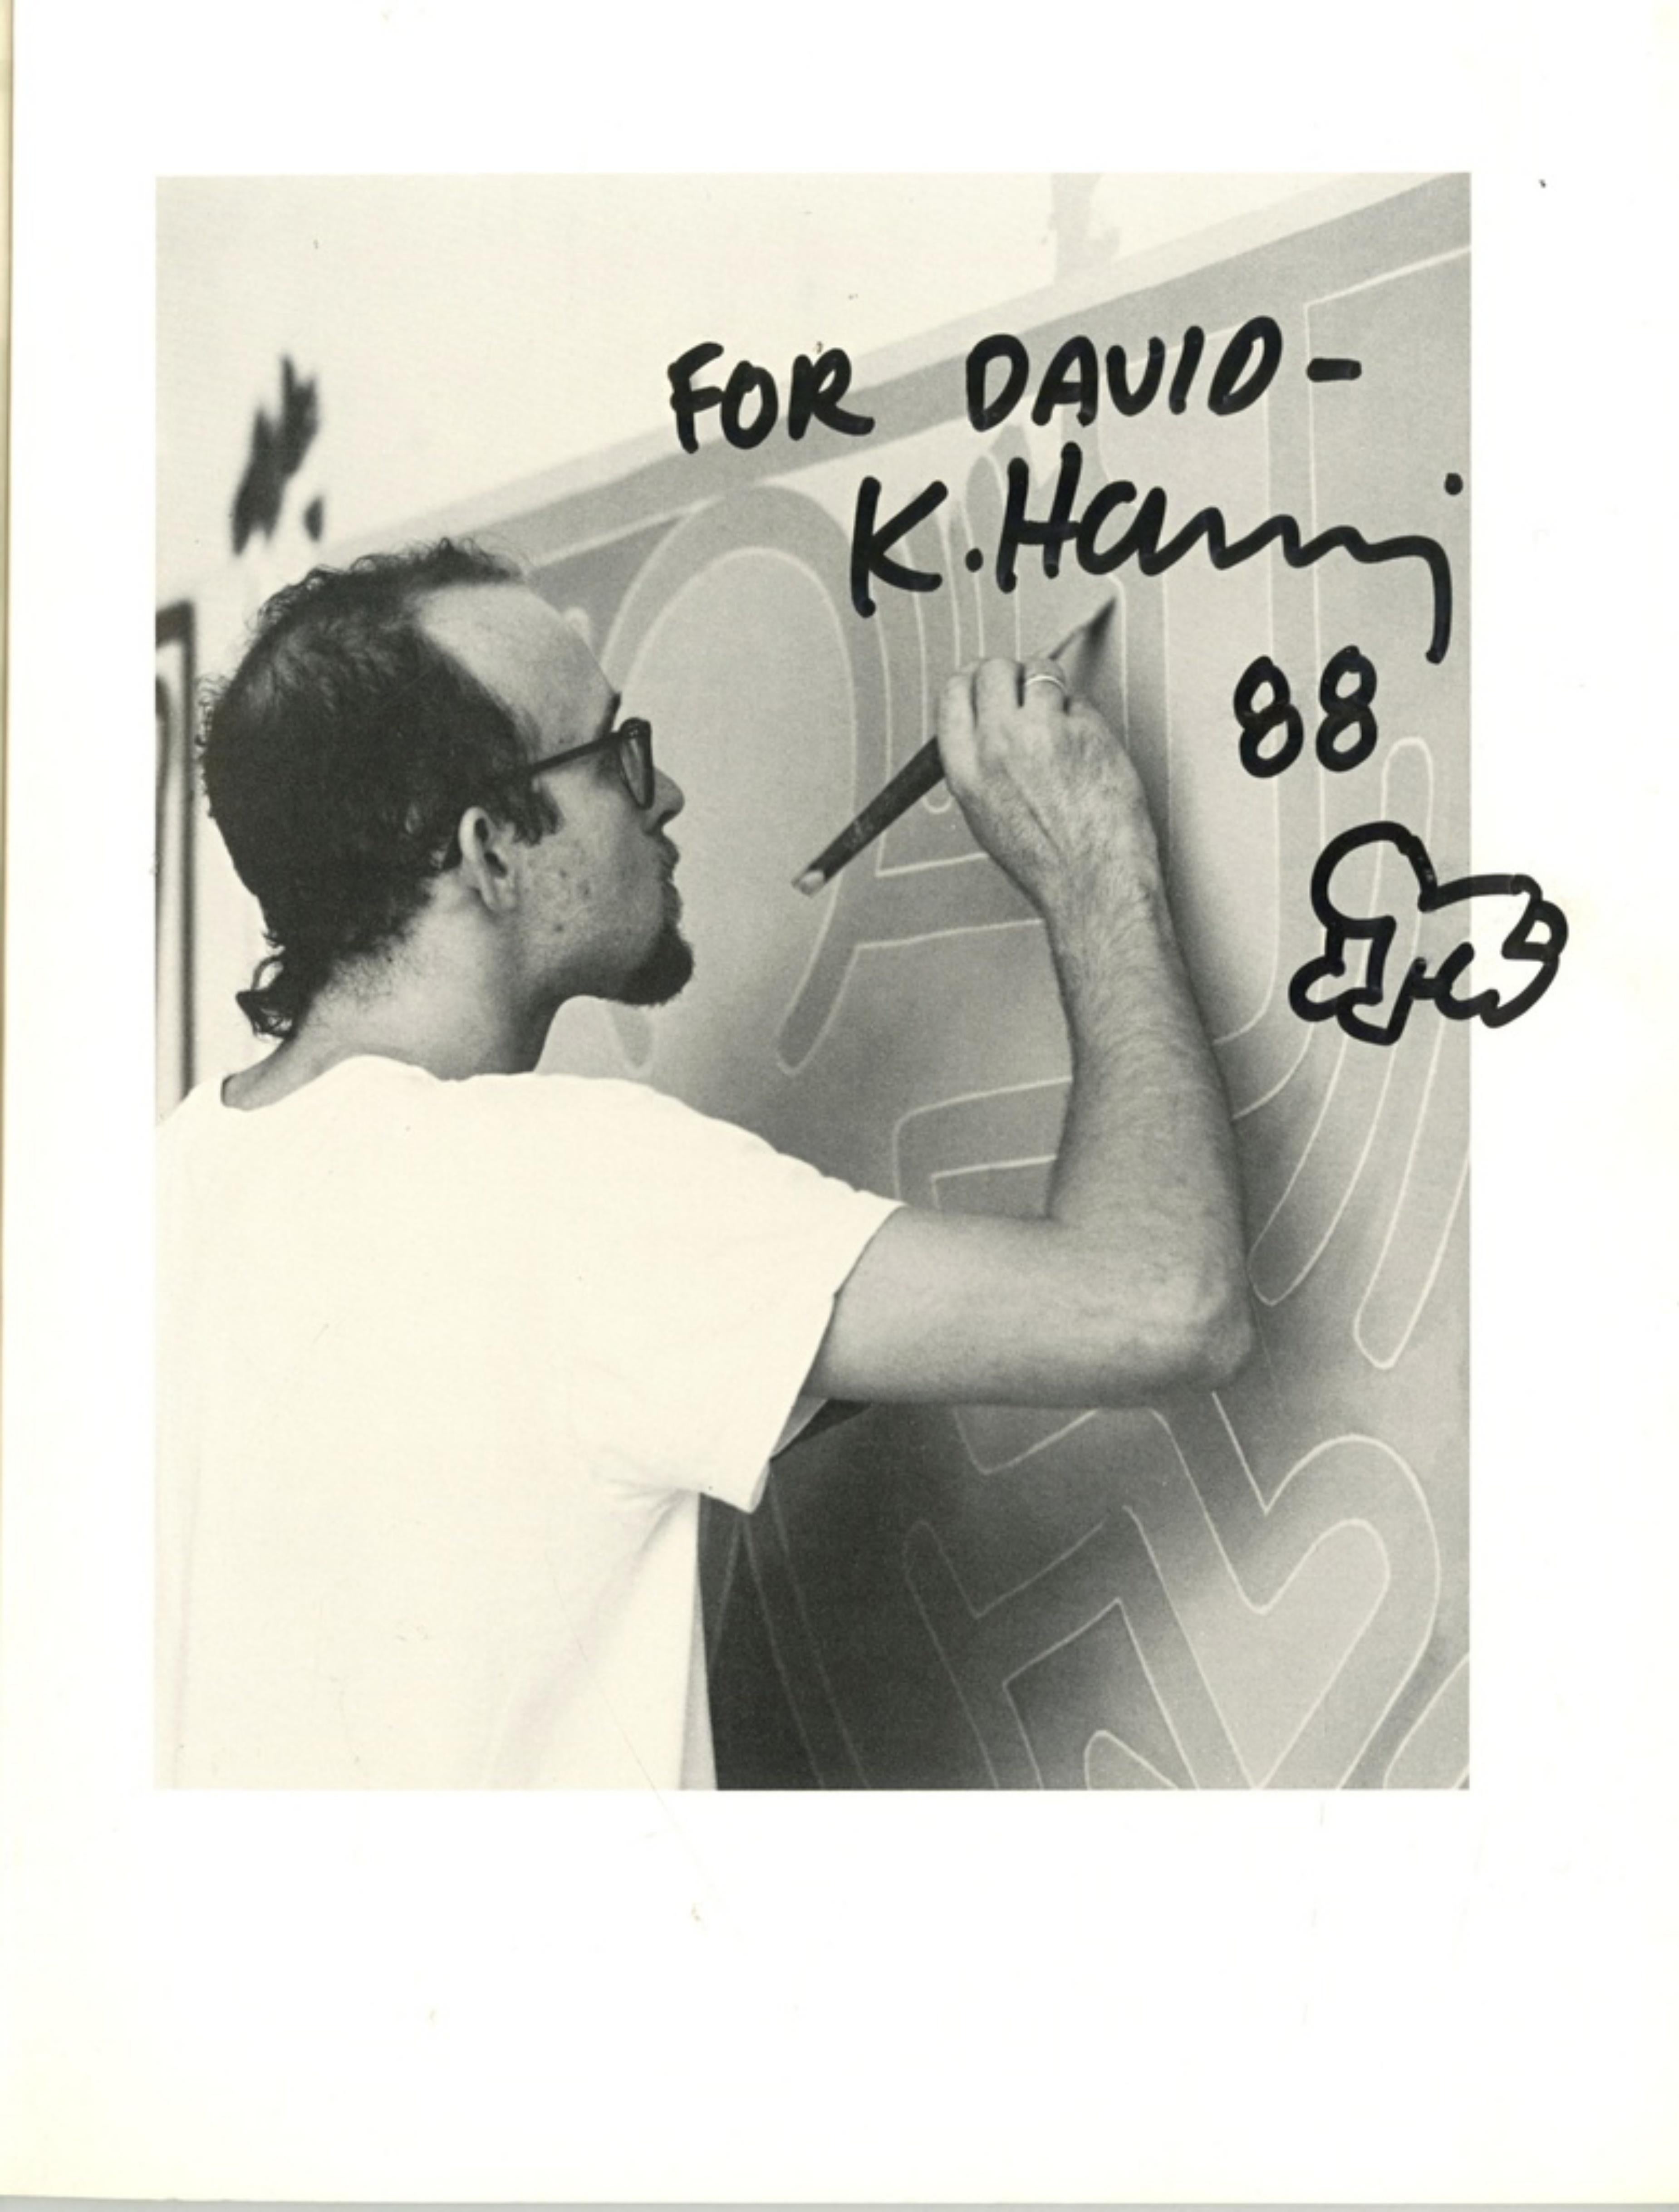 Keith Haring
Dibujo sin título inscrito a David, 1988
Dibujo original sobre papel encuadernado en monografía histórica, inscrito a David Copley
Firmado en negrita, inscrito y fechado con rotulador negro encima del dibujo
Se trata de una obra